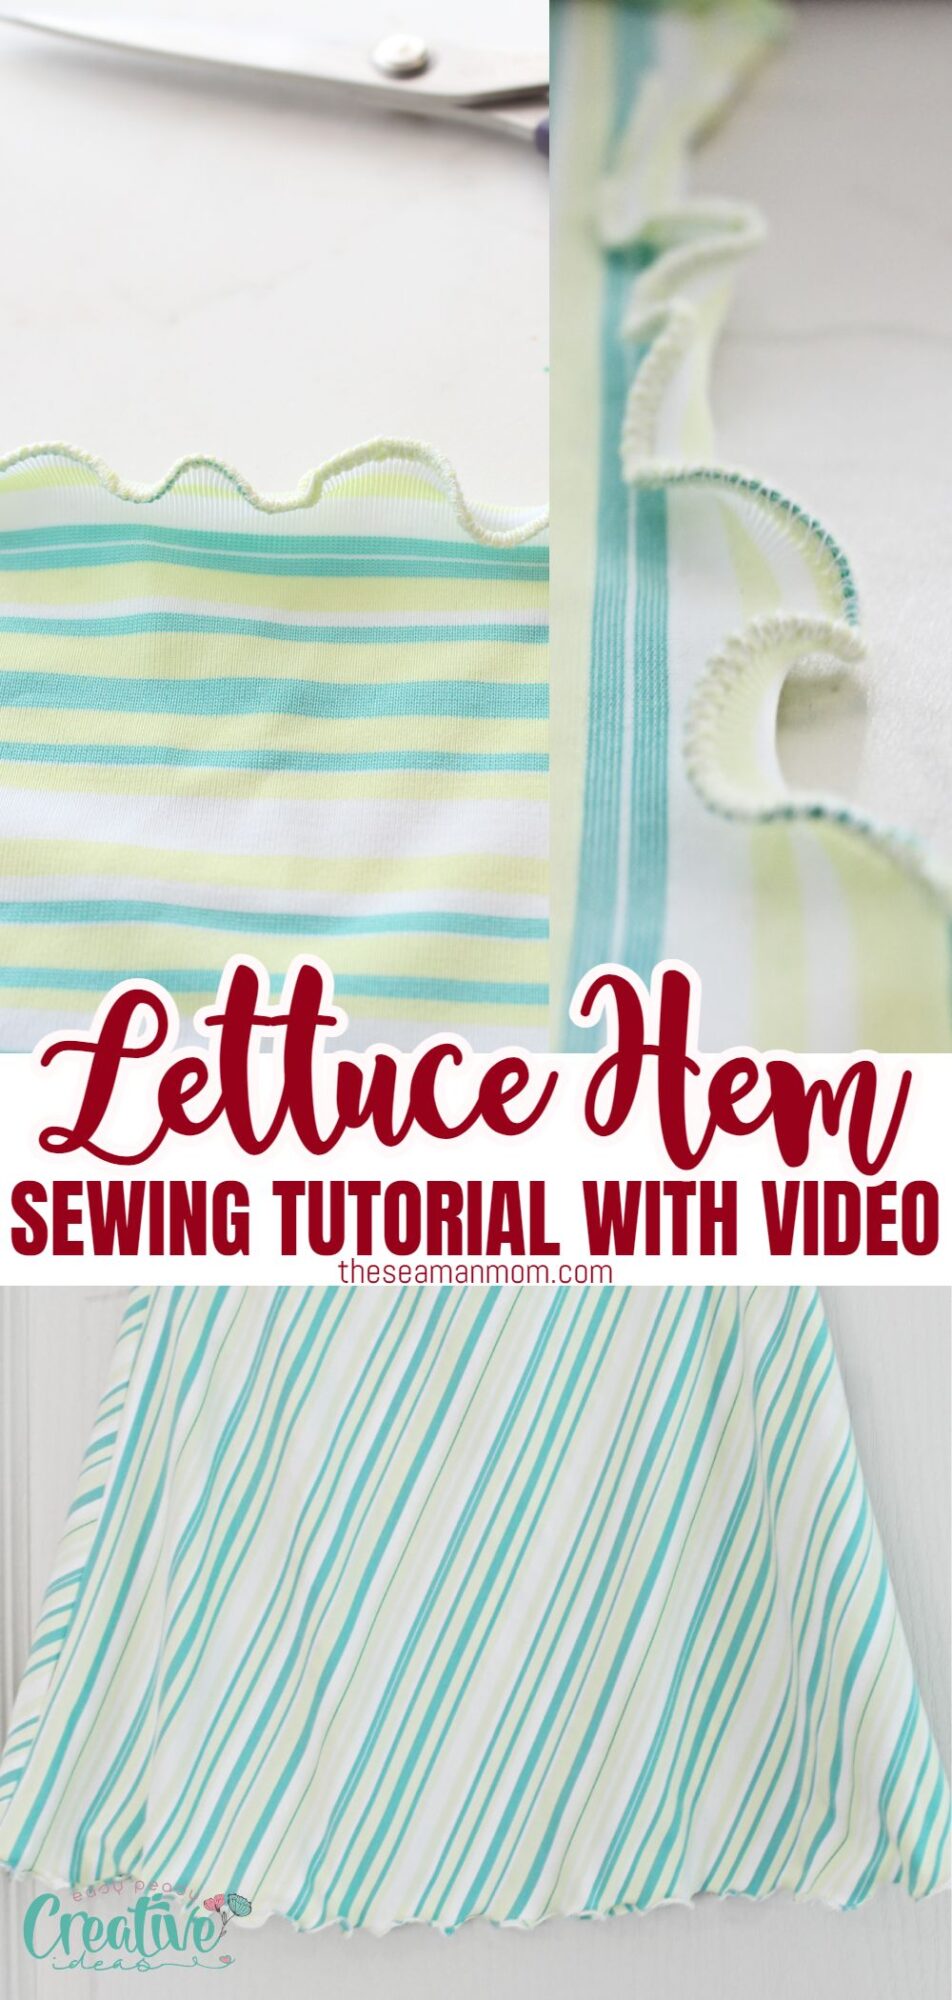 LETTUCE HEM, How to Sew a Lettuce Hem